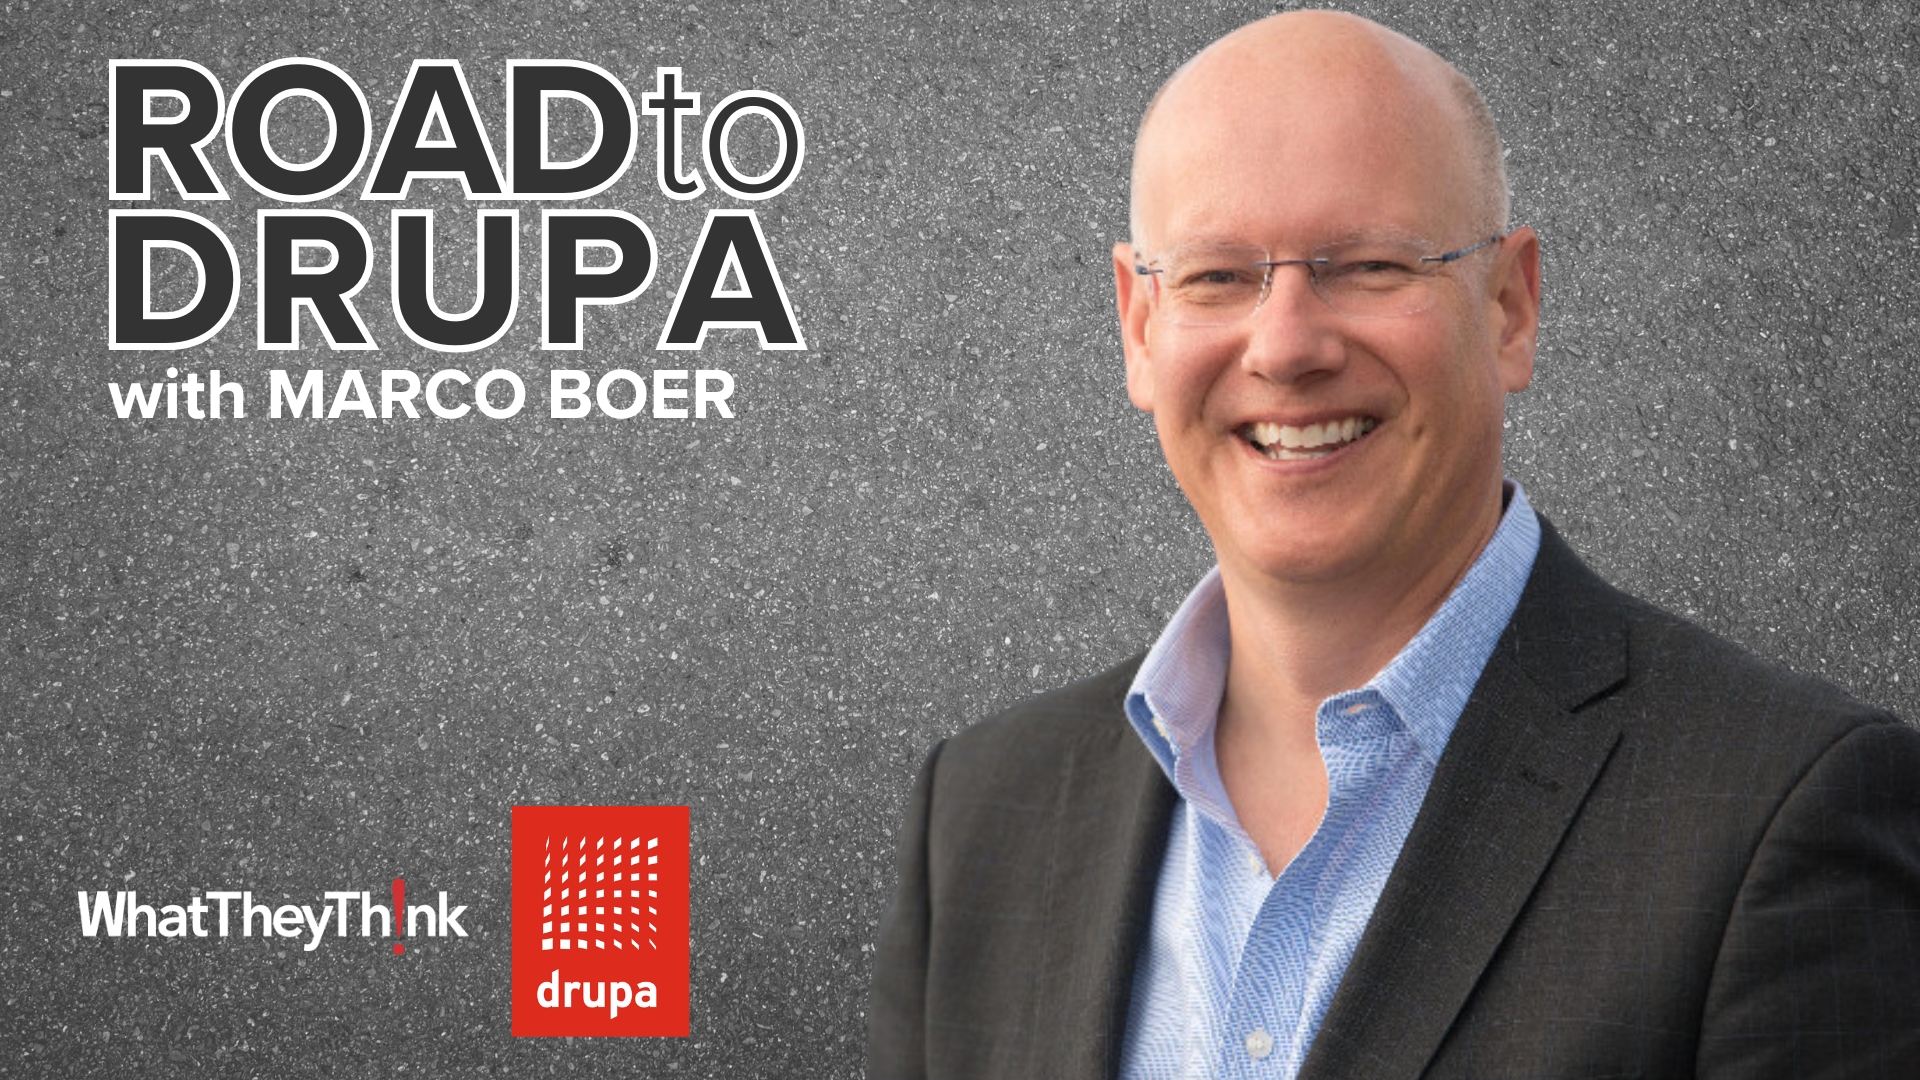 Road to drupa: IT Strategies' Marco Boer - Part 2